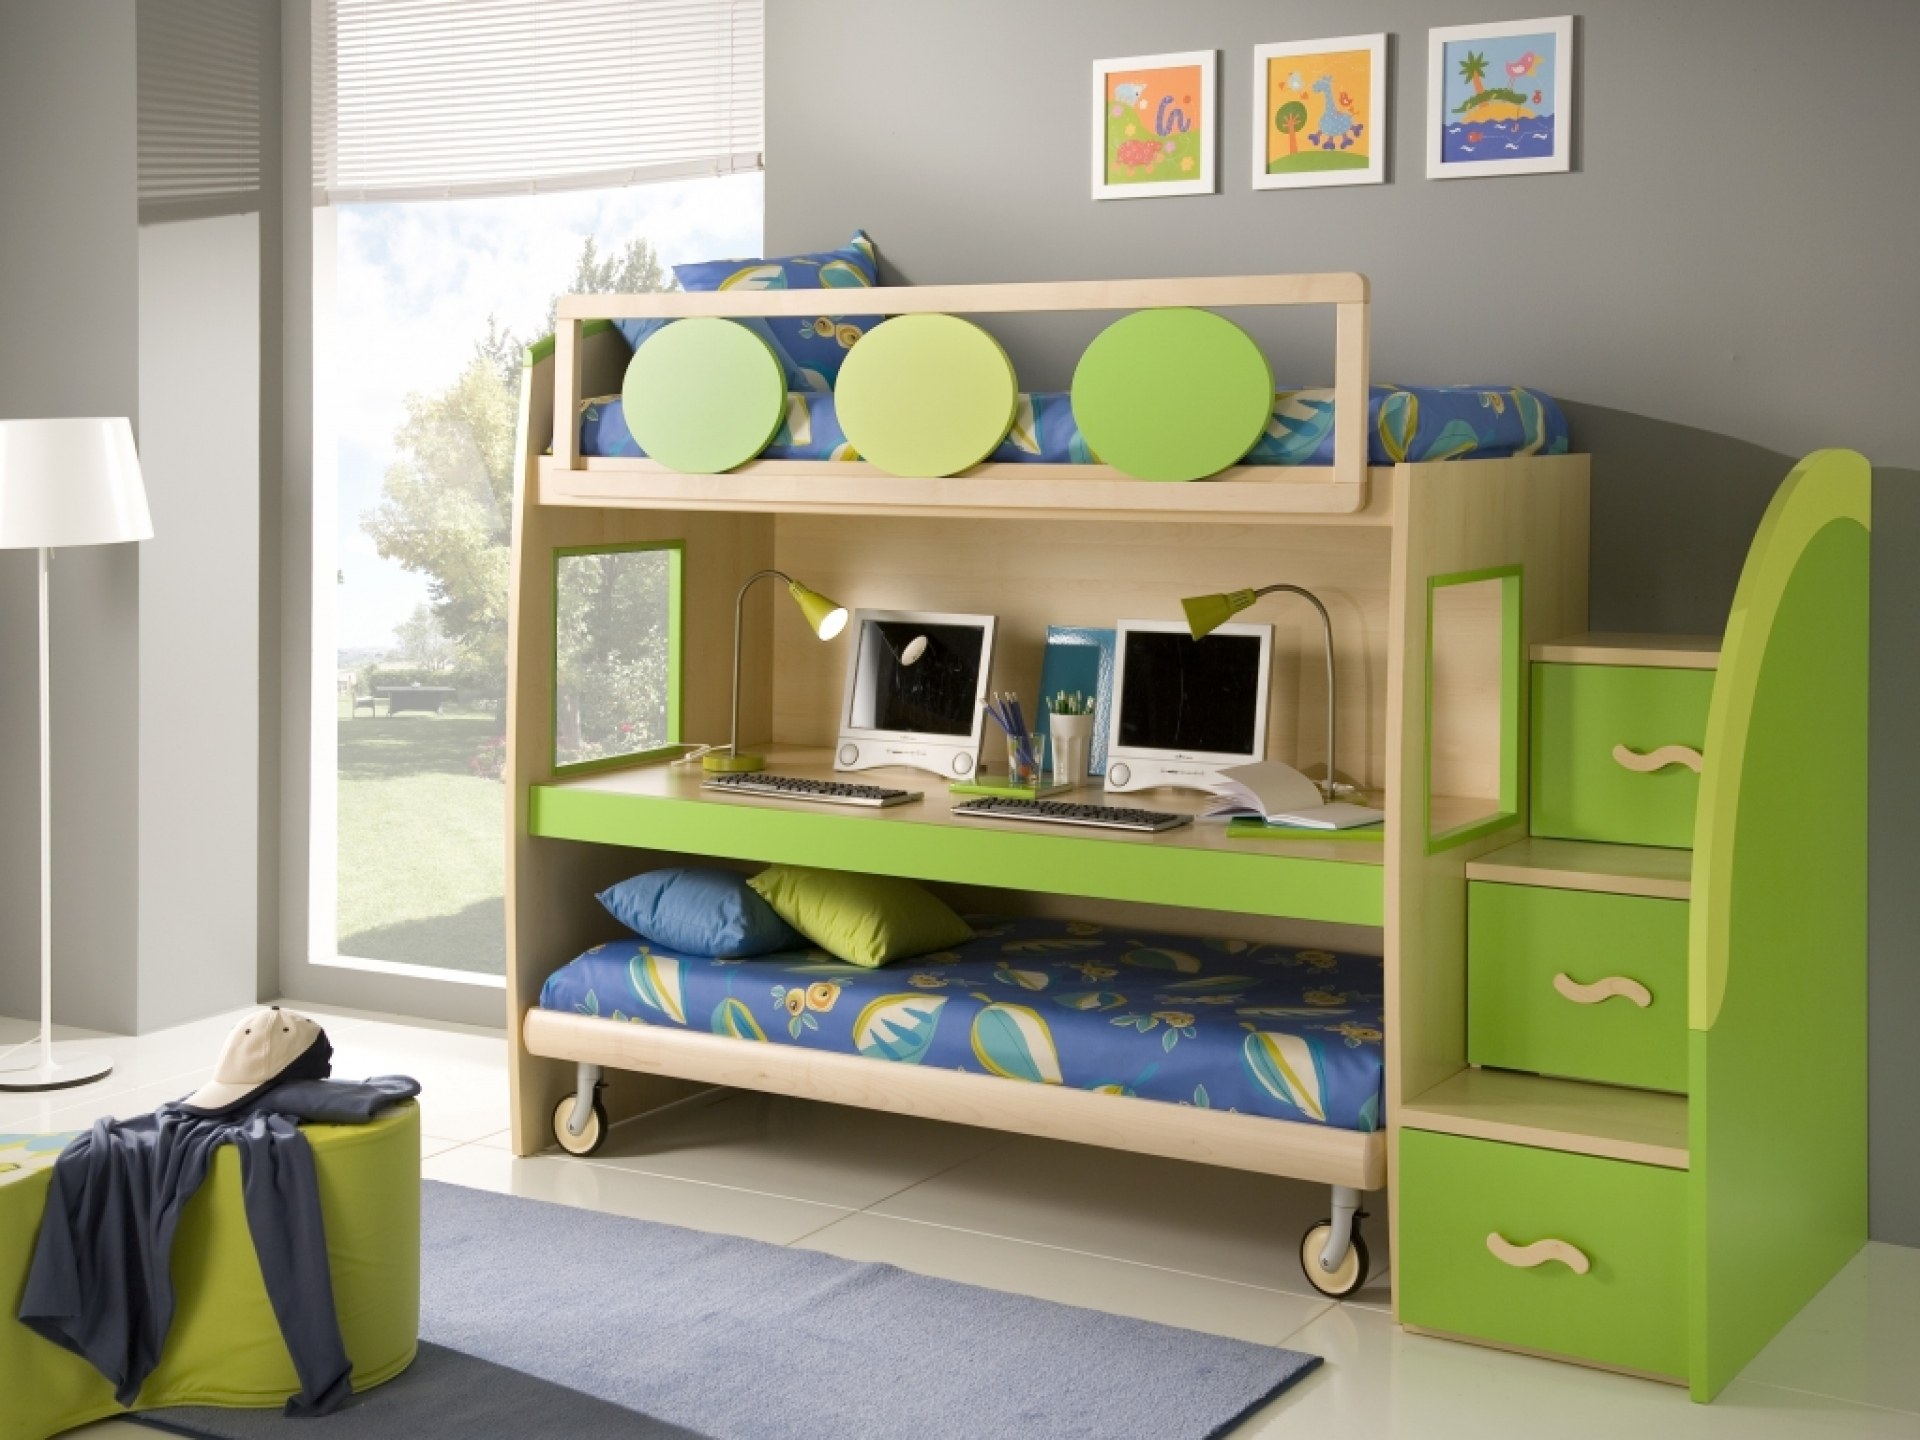 Решение для маленьких детей. Двухъярусная кровать для детей. Двухуровневая кровать для детей. Многофункциональная детская кровать. Двухъярусная кровать со столом.